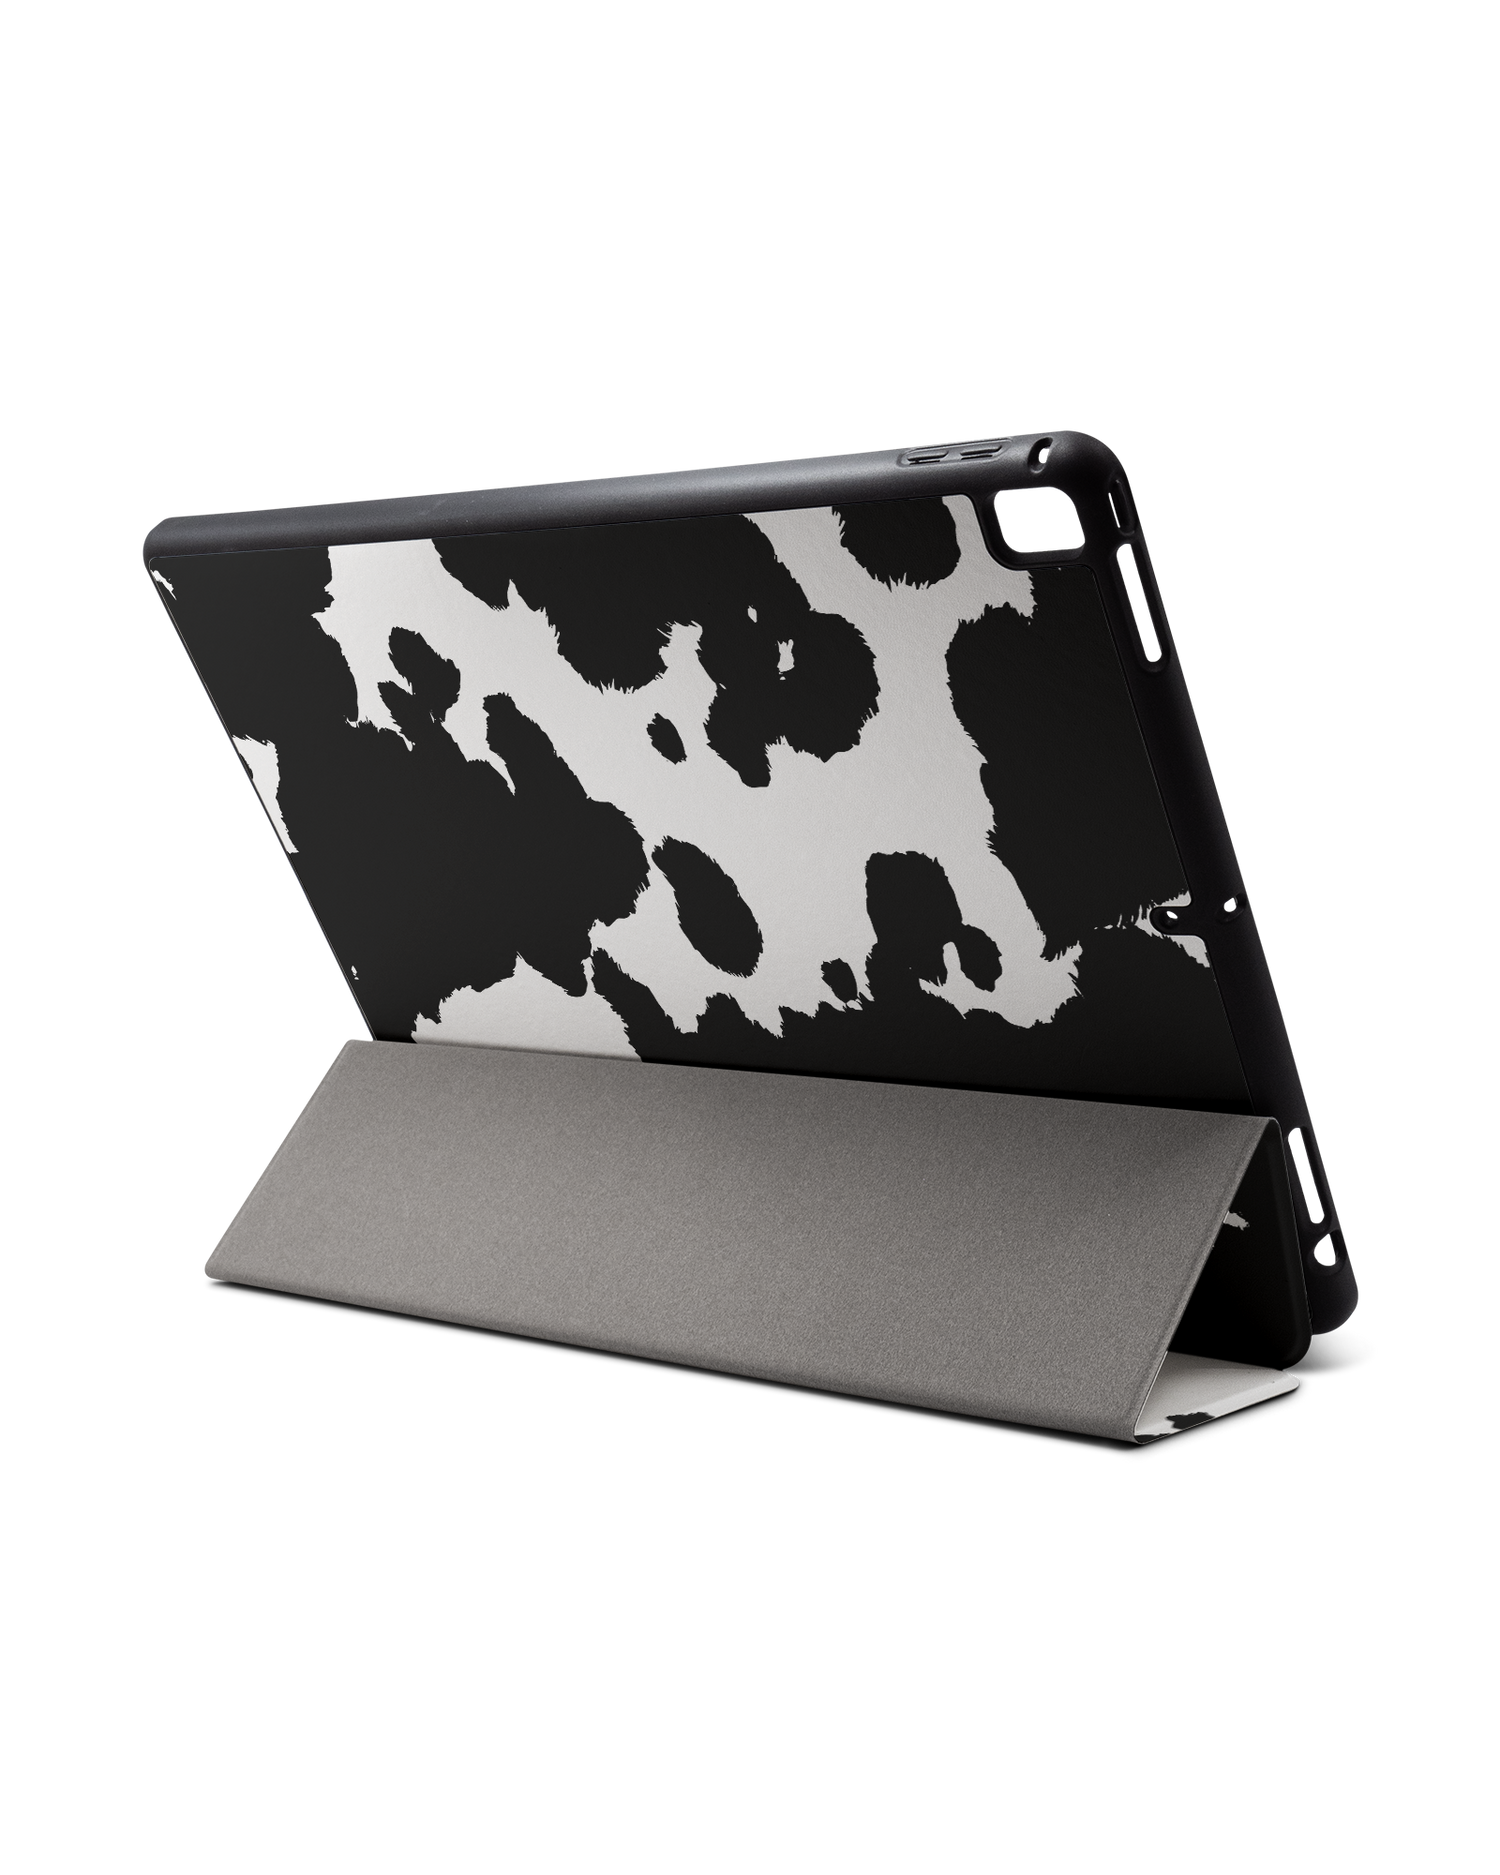 Cow Print iPad Hülle mit Stifthalter für Apple iPad Pro 2 12.9'' (2017): Aufgestellt im Querformat von hinten